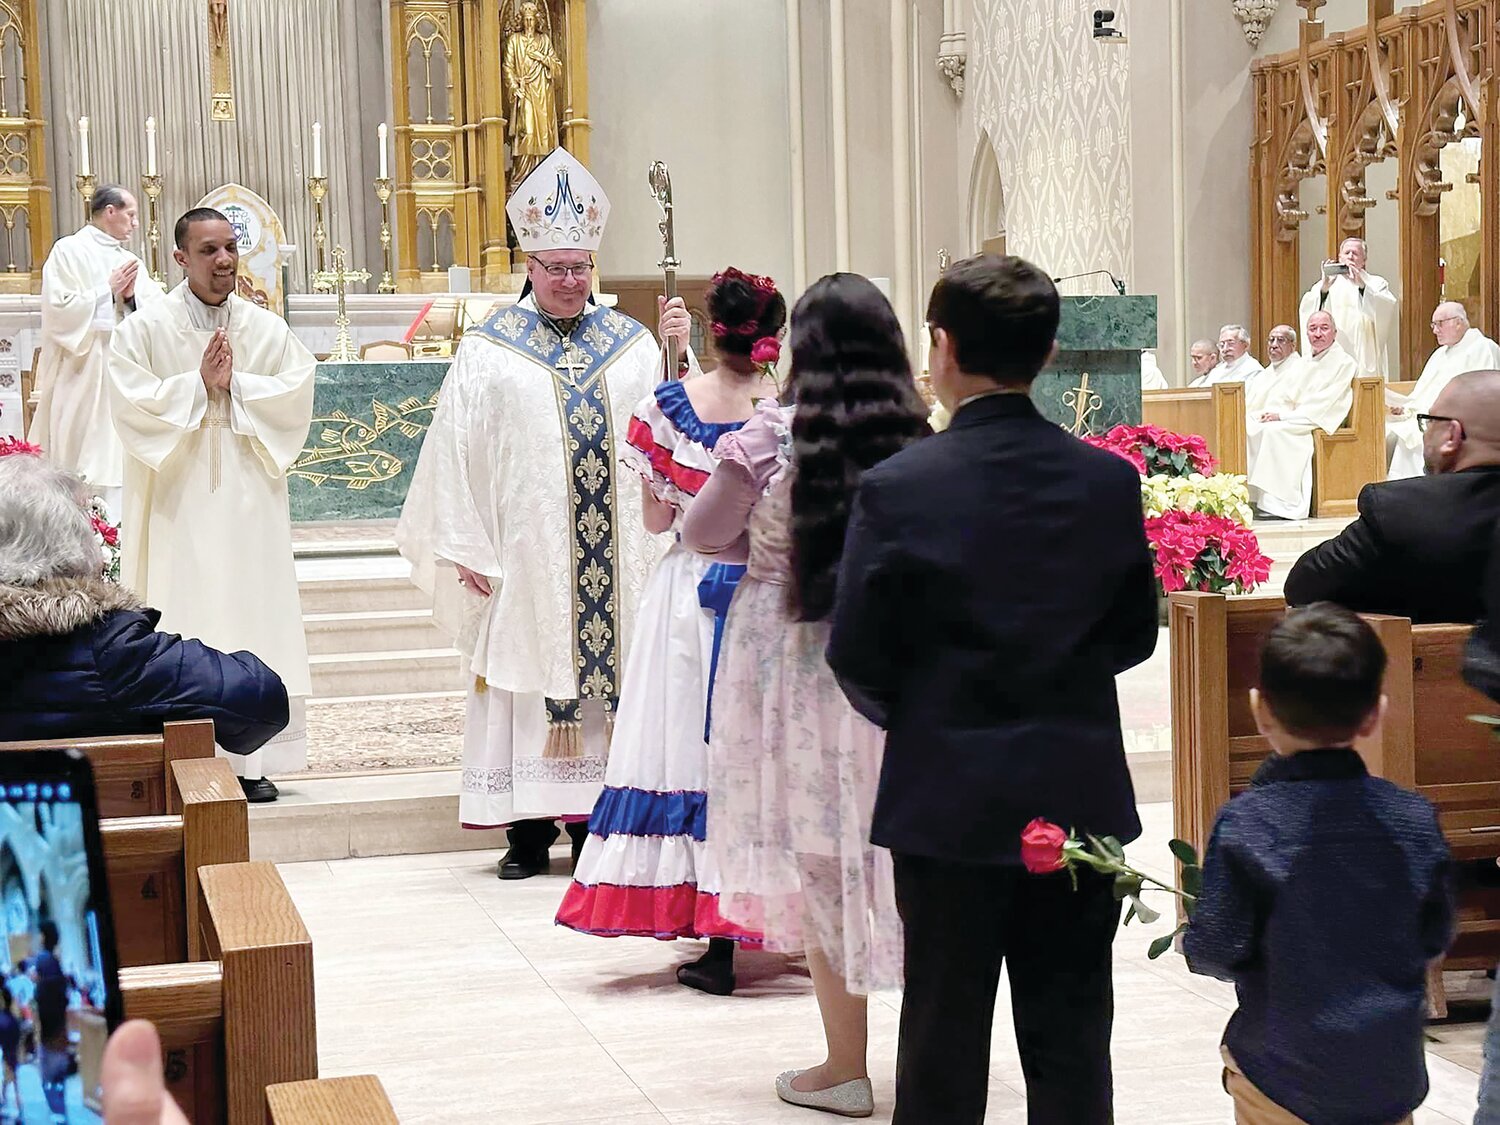 Misa a La Virgen de la ALtagracia: El Obispo Richard G. Henning recibe las ofrendas acompañado por el seminarista Jairon Olmos el pasado 19 de enero en la Catedral de San Pedro y San Pablo.